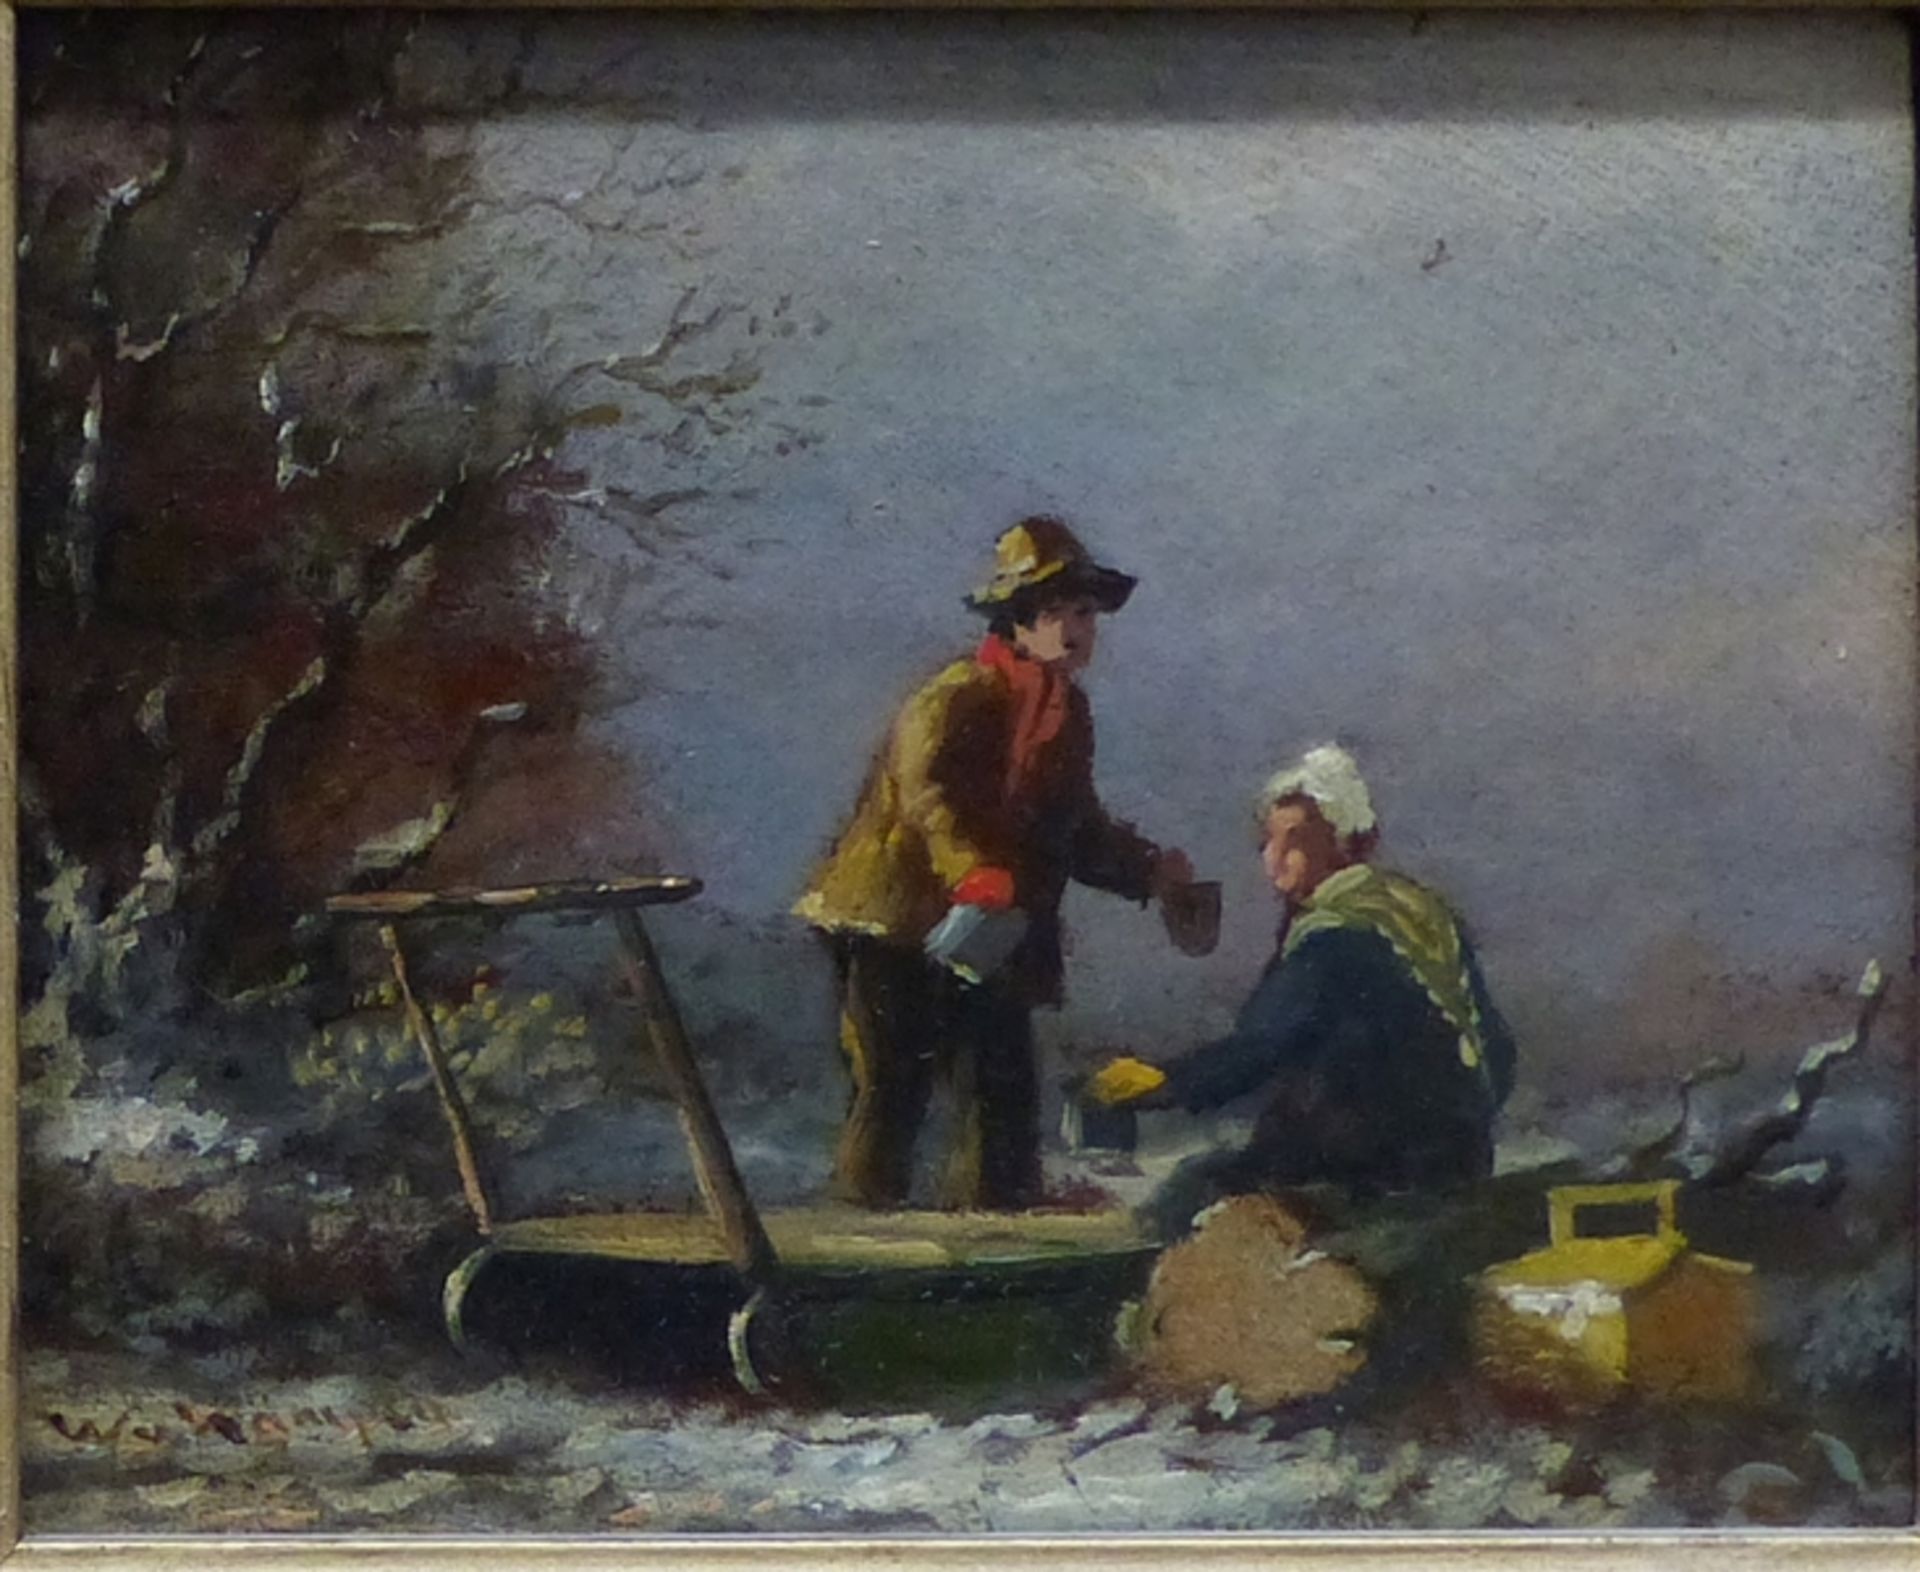 Unbekannt Öl auf Holz, Mann und Frau mit Schlitten im Winter, Holland 20. Jh., links unten